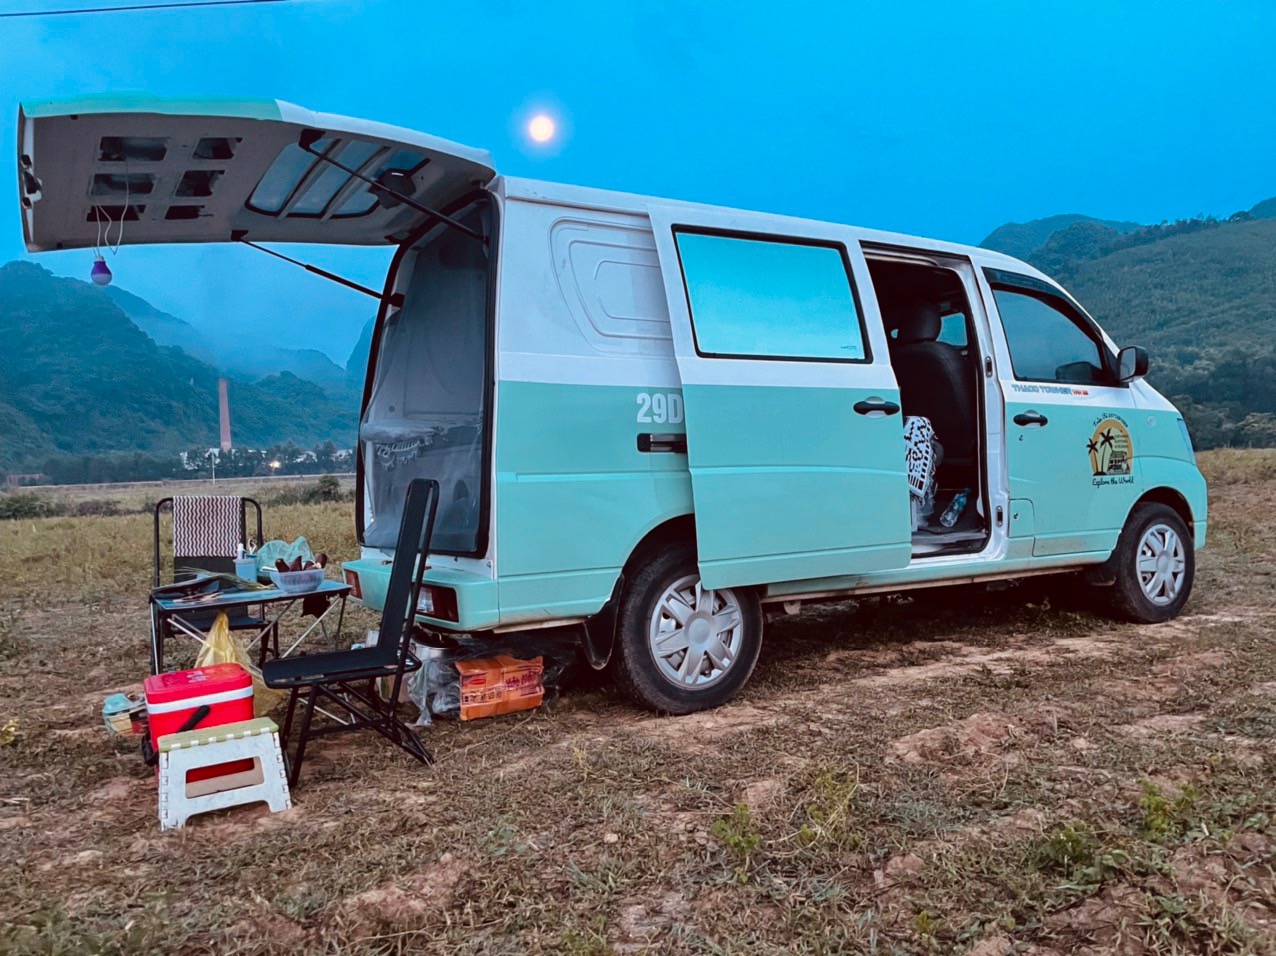 Bán Triton mua xe van THACO hơn 300 triệu độ camping chạy Bắc Nam hơn 18.000km, chủ xe trải lòng: 'Vui, tiện nhưng đi xa hơi cực' - Ảnh 6.